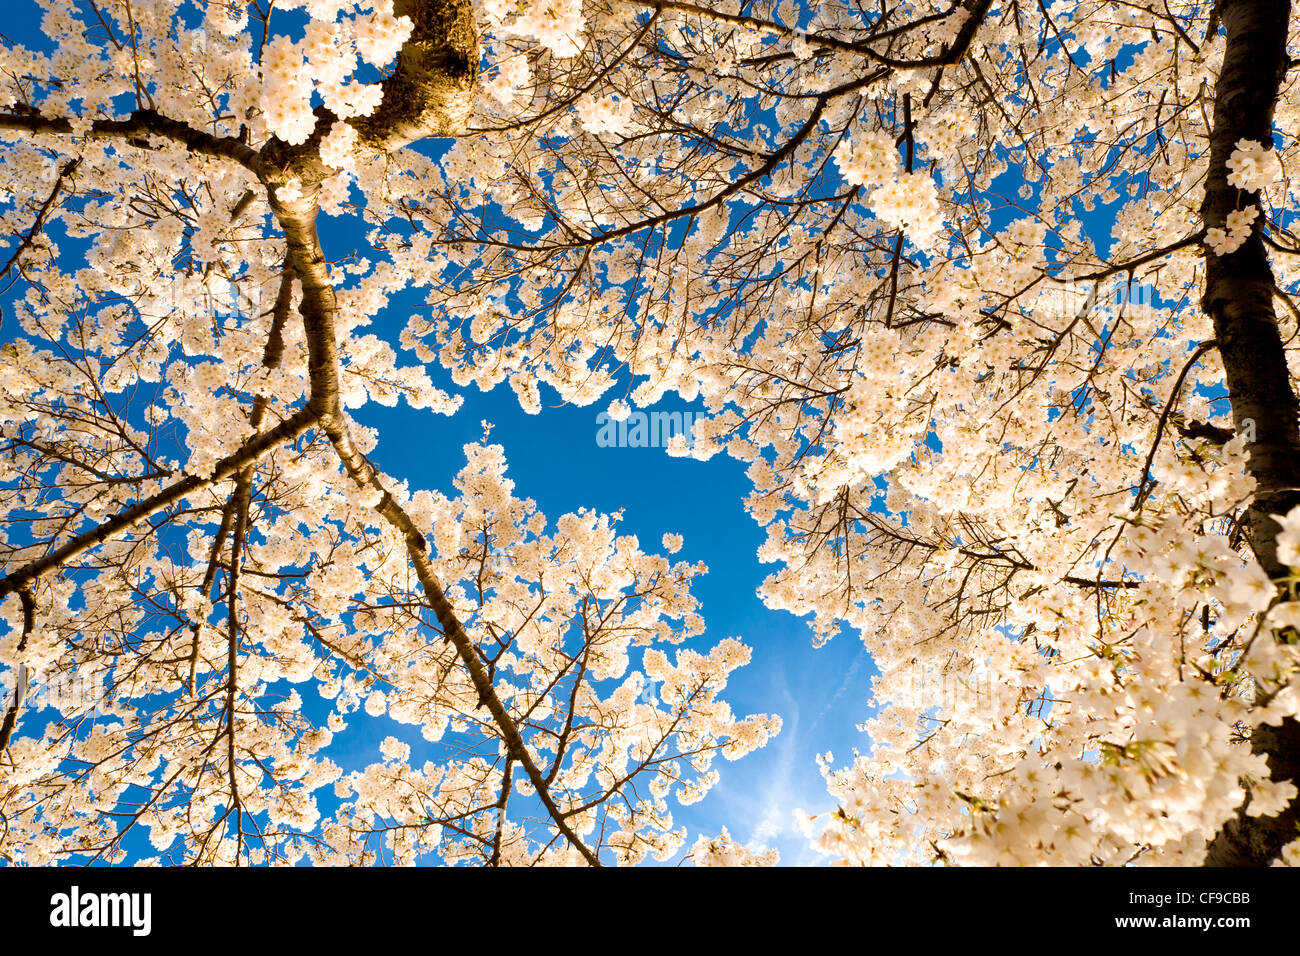 La lumière du soleil qui brillait à travers les branches des cerisiers en pleine floraison de crête au-dessus. Hanami américain à Washington DC. Banque D'Images